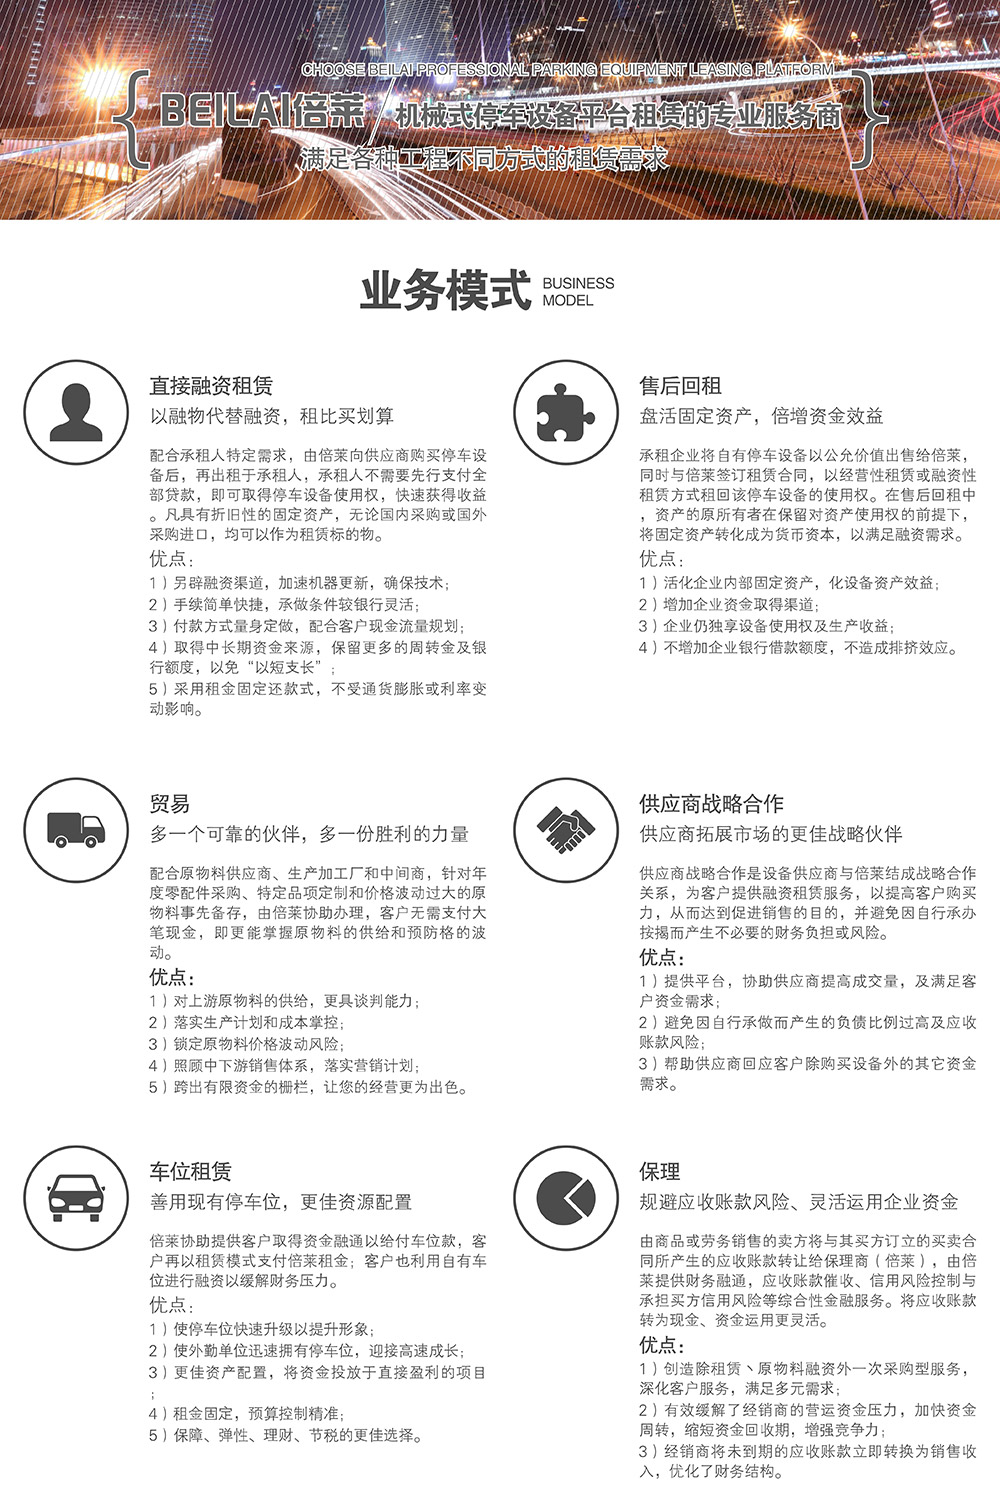 重庆四川倍莱停车设备租赁业务模式.jpg